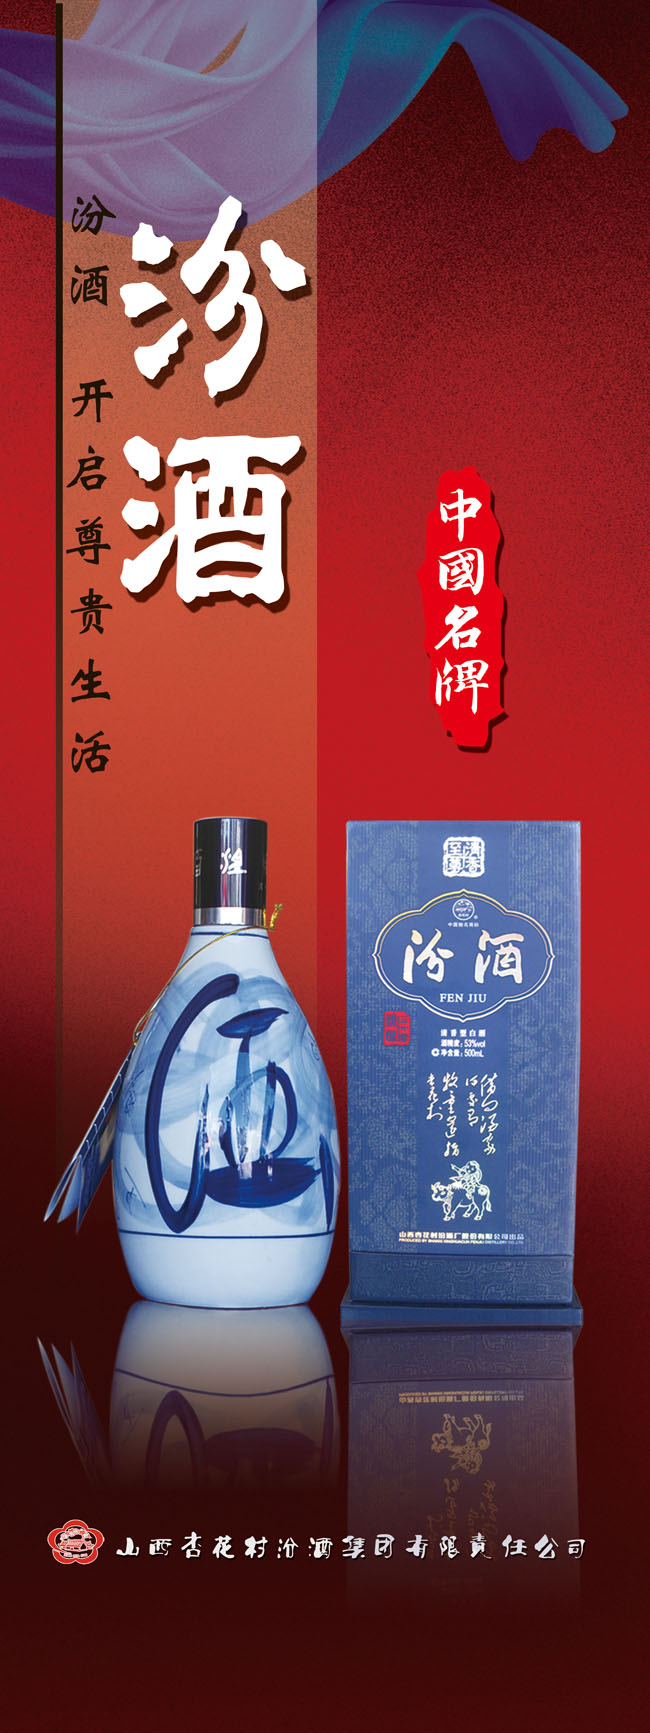 中国名牌汾酒展板海报PSD素材